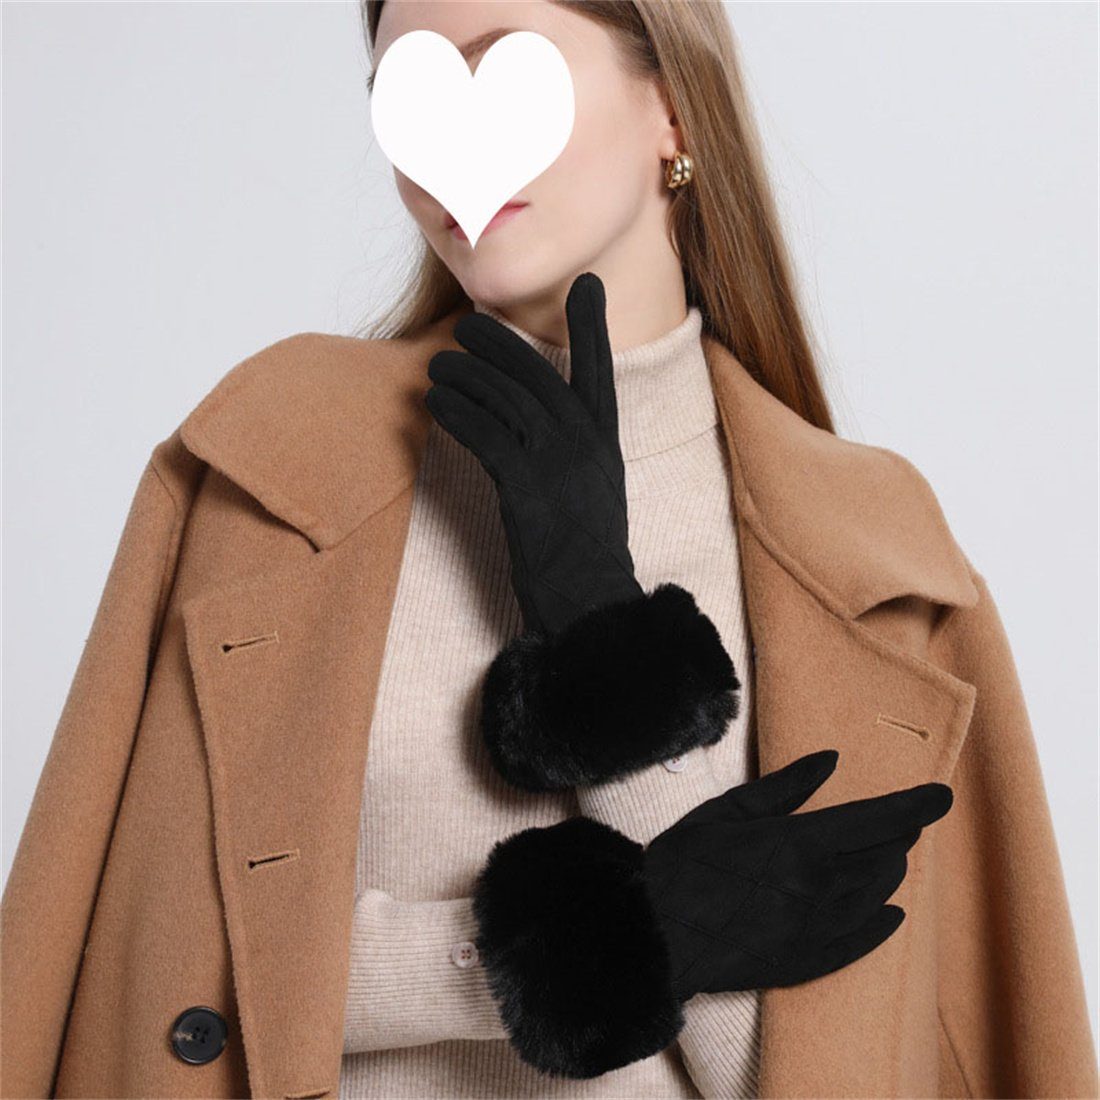 DÖRÖY Fleecehandschuhe Damen Kunstfell gepolsterte warme Handschuhe, Touchscreen Handschuhe Schwarz | Fleecehandschuhe